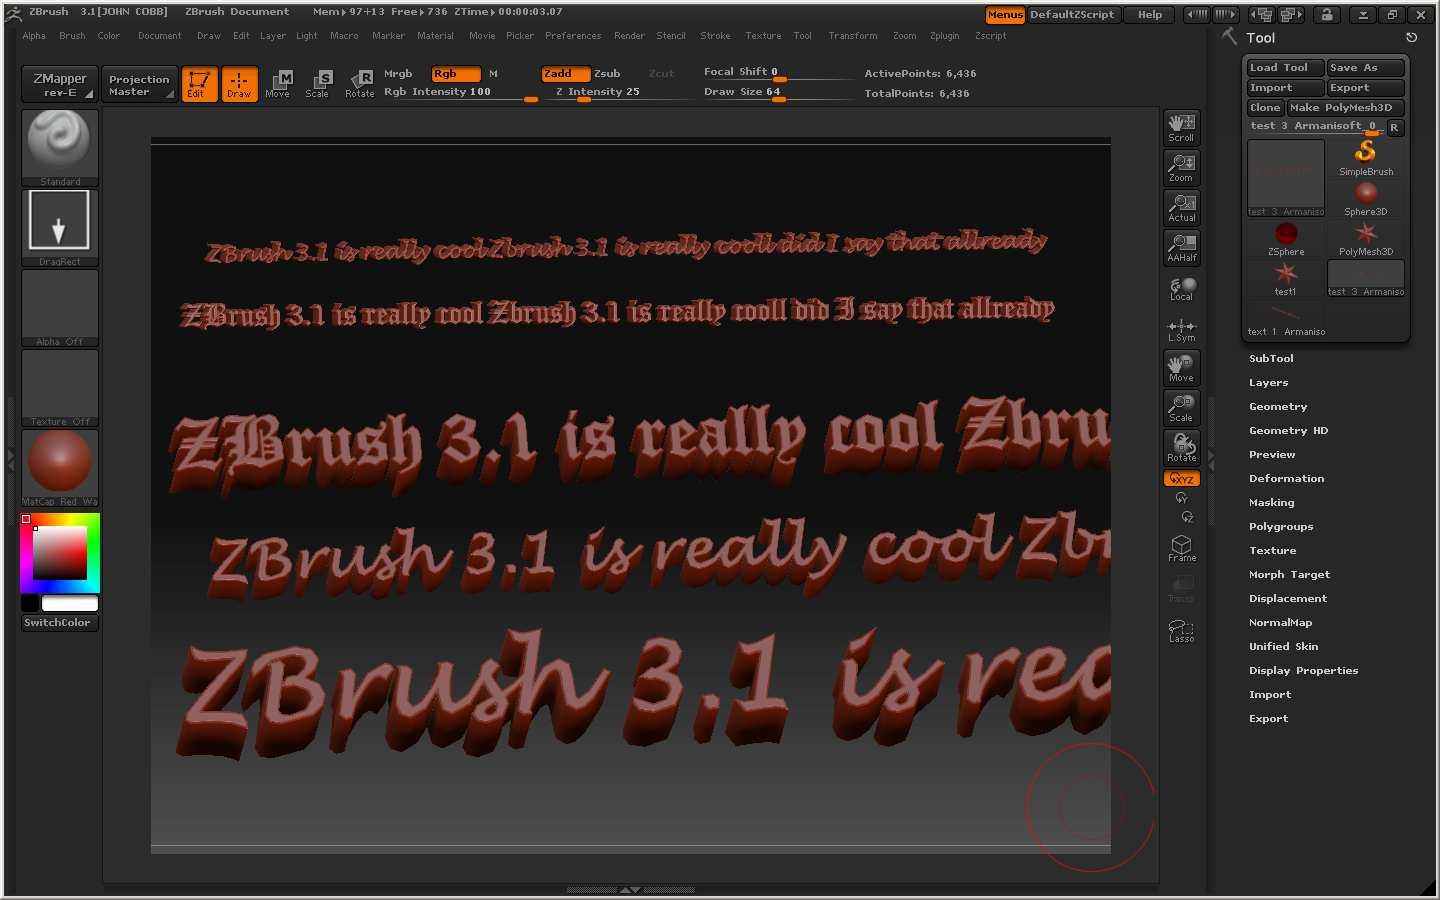 what coding language does zbrush use